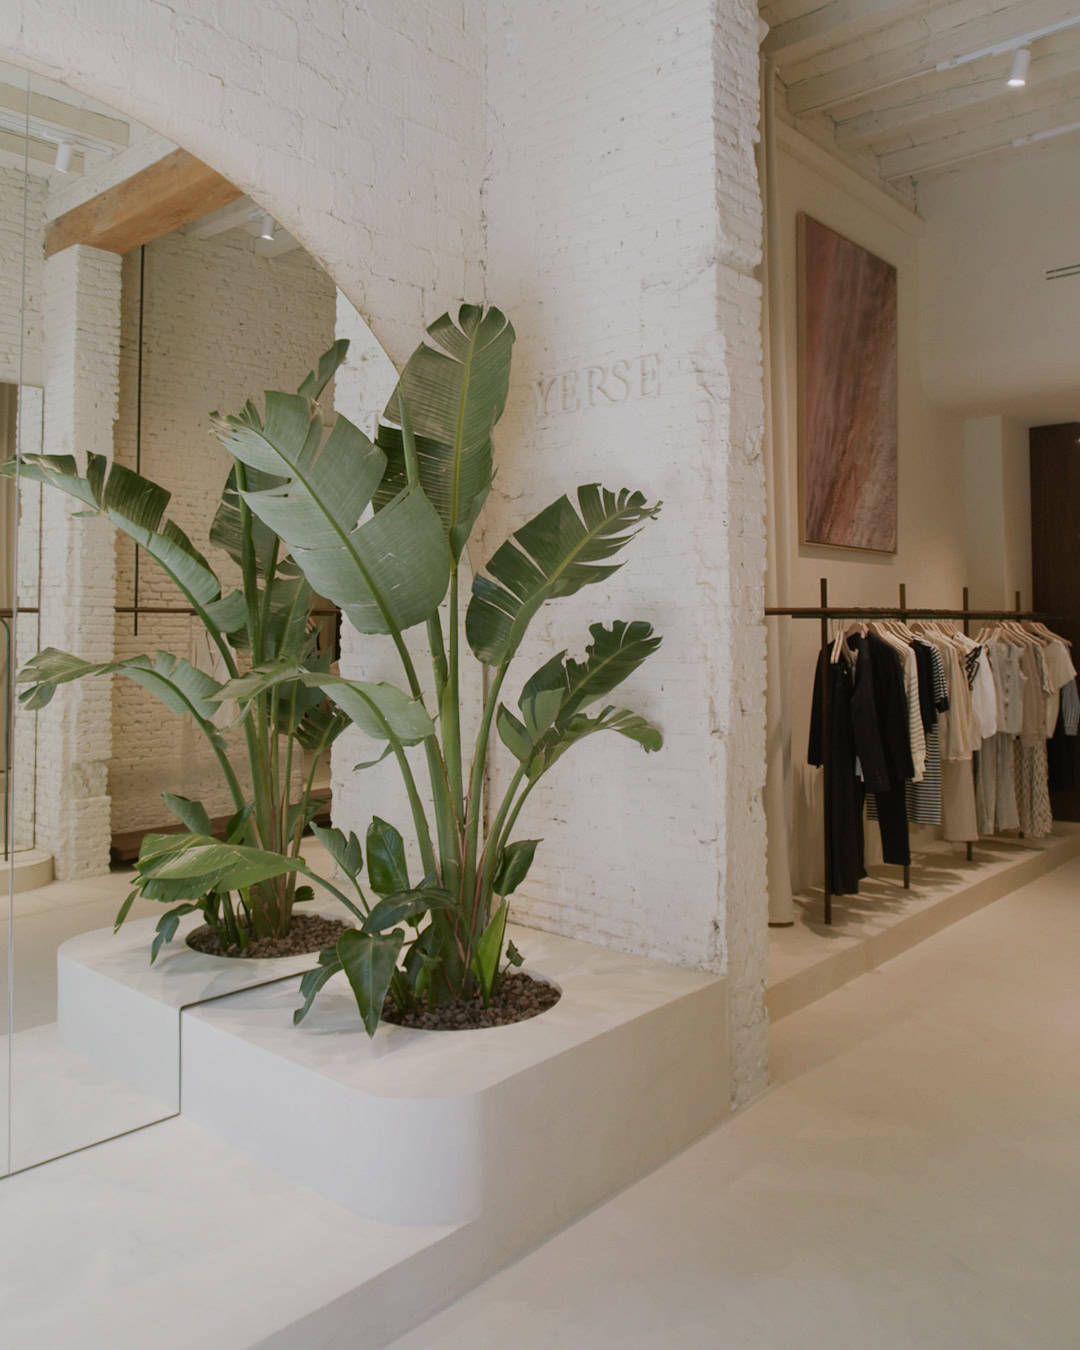 Le nouveau magasin phare de tricots de Yerse ouvre ses portes à Barcelone